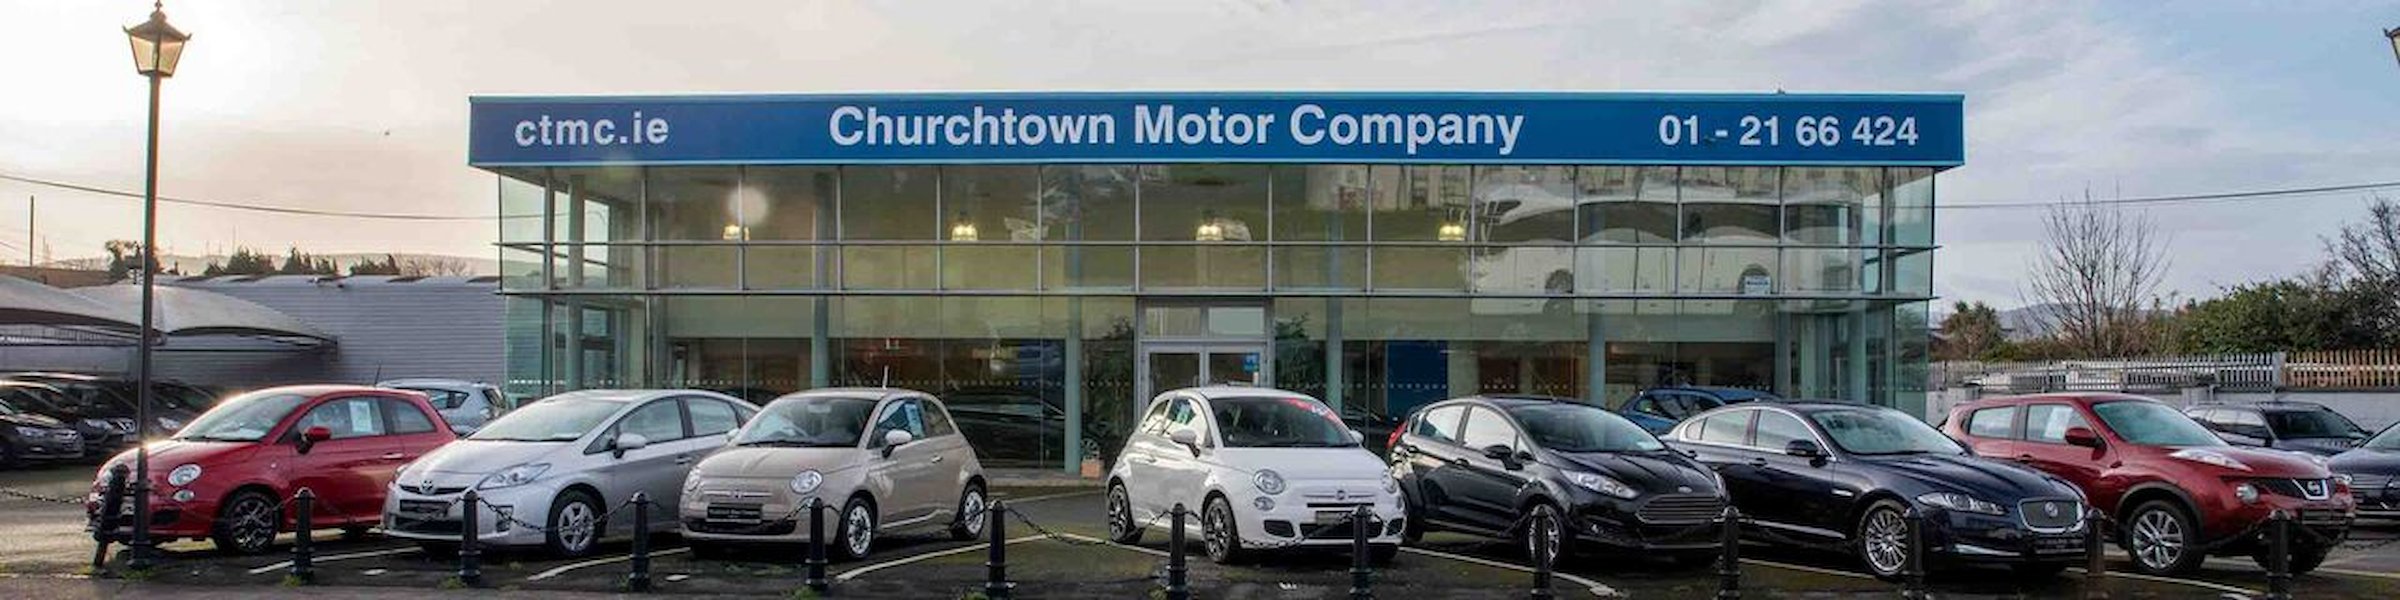 Churchtown Motor Company